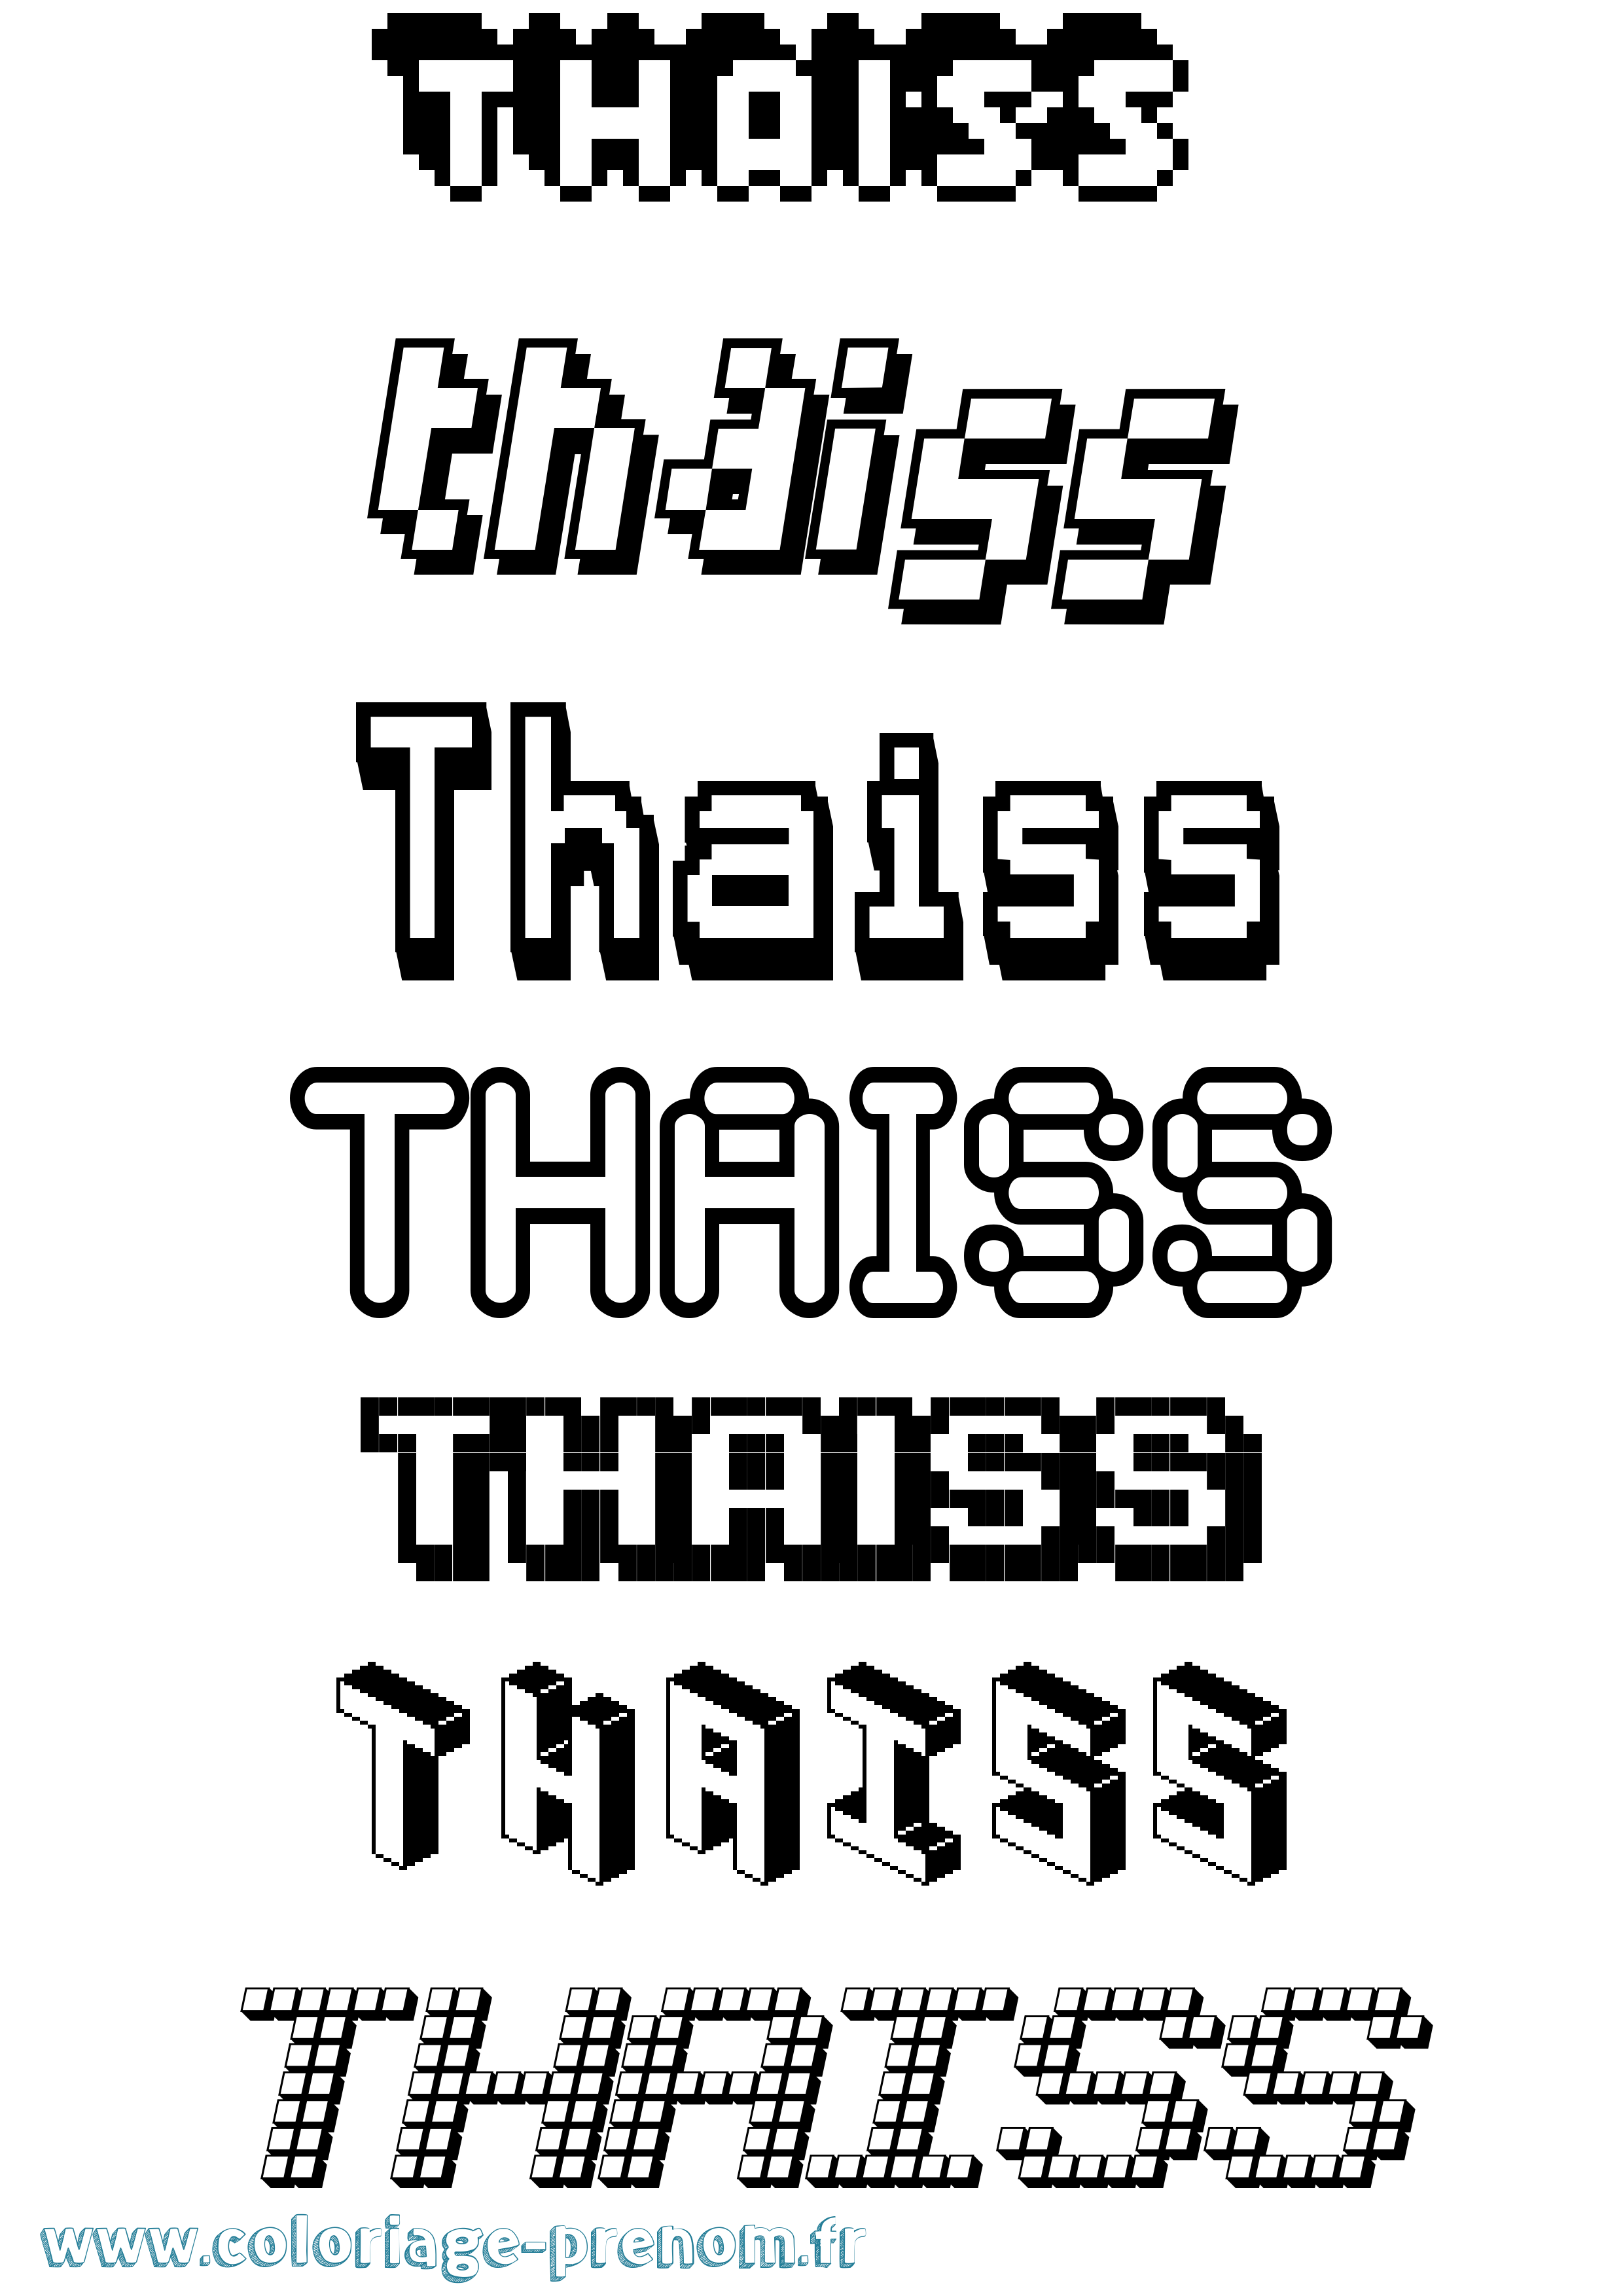 Coloriage prénom Thaiss Pixel